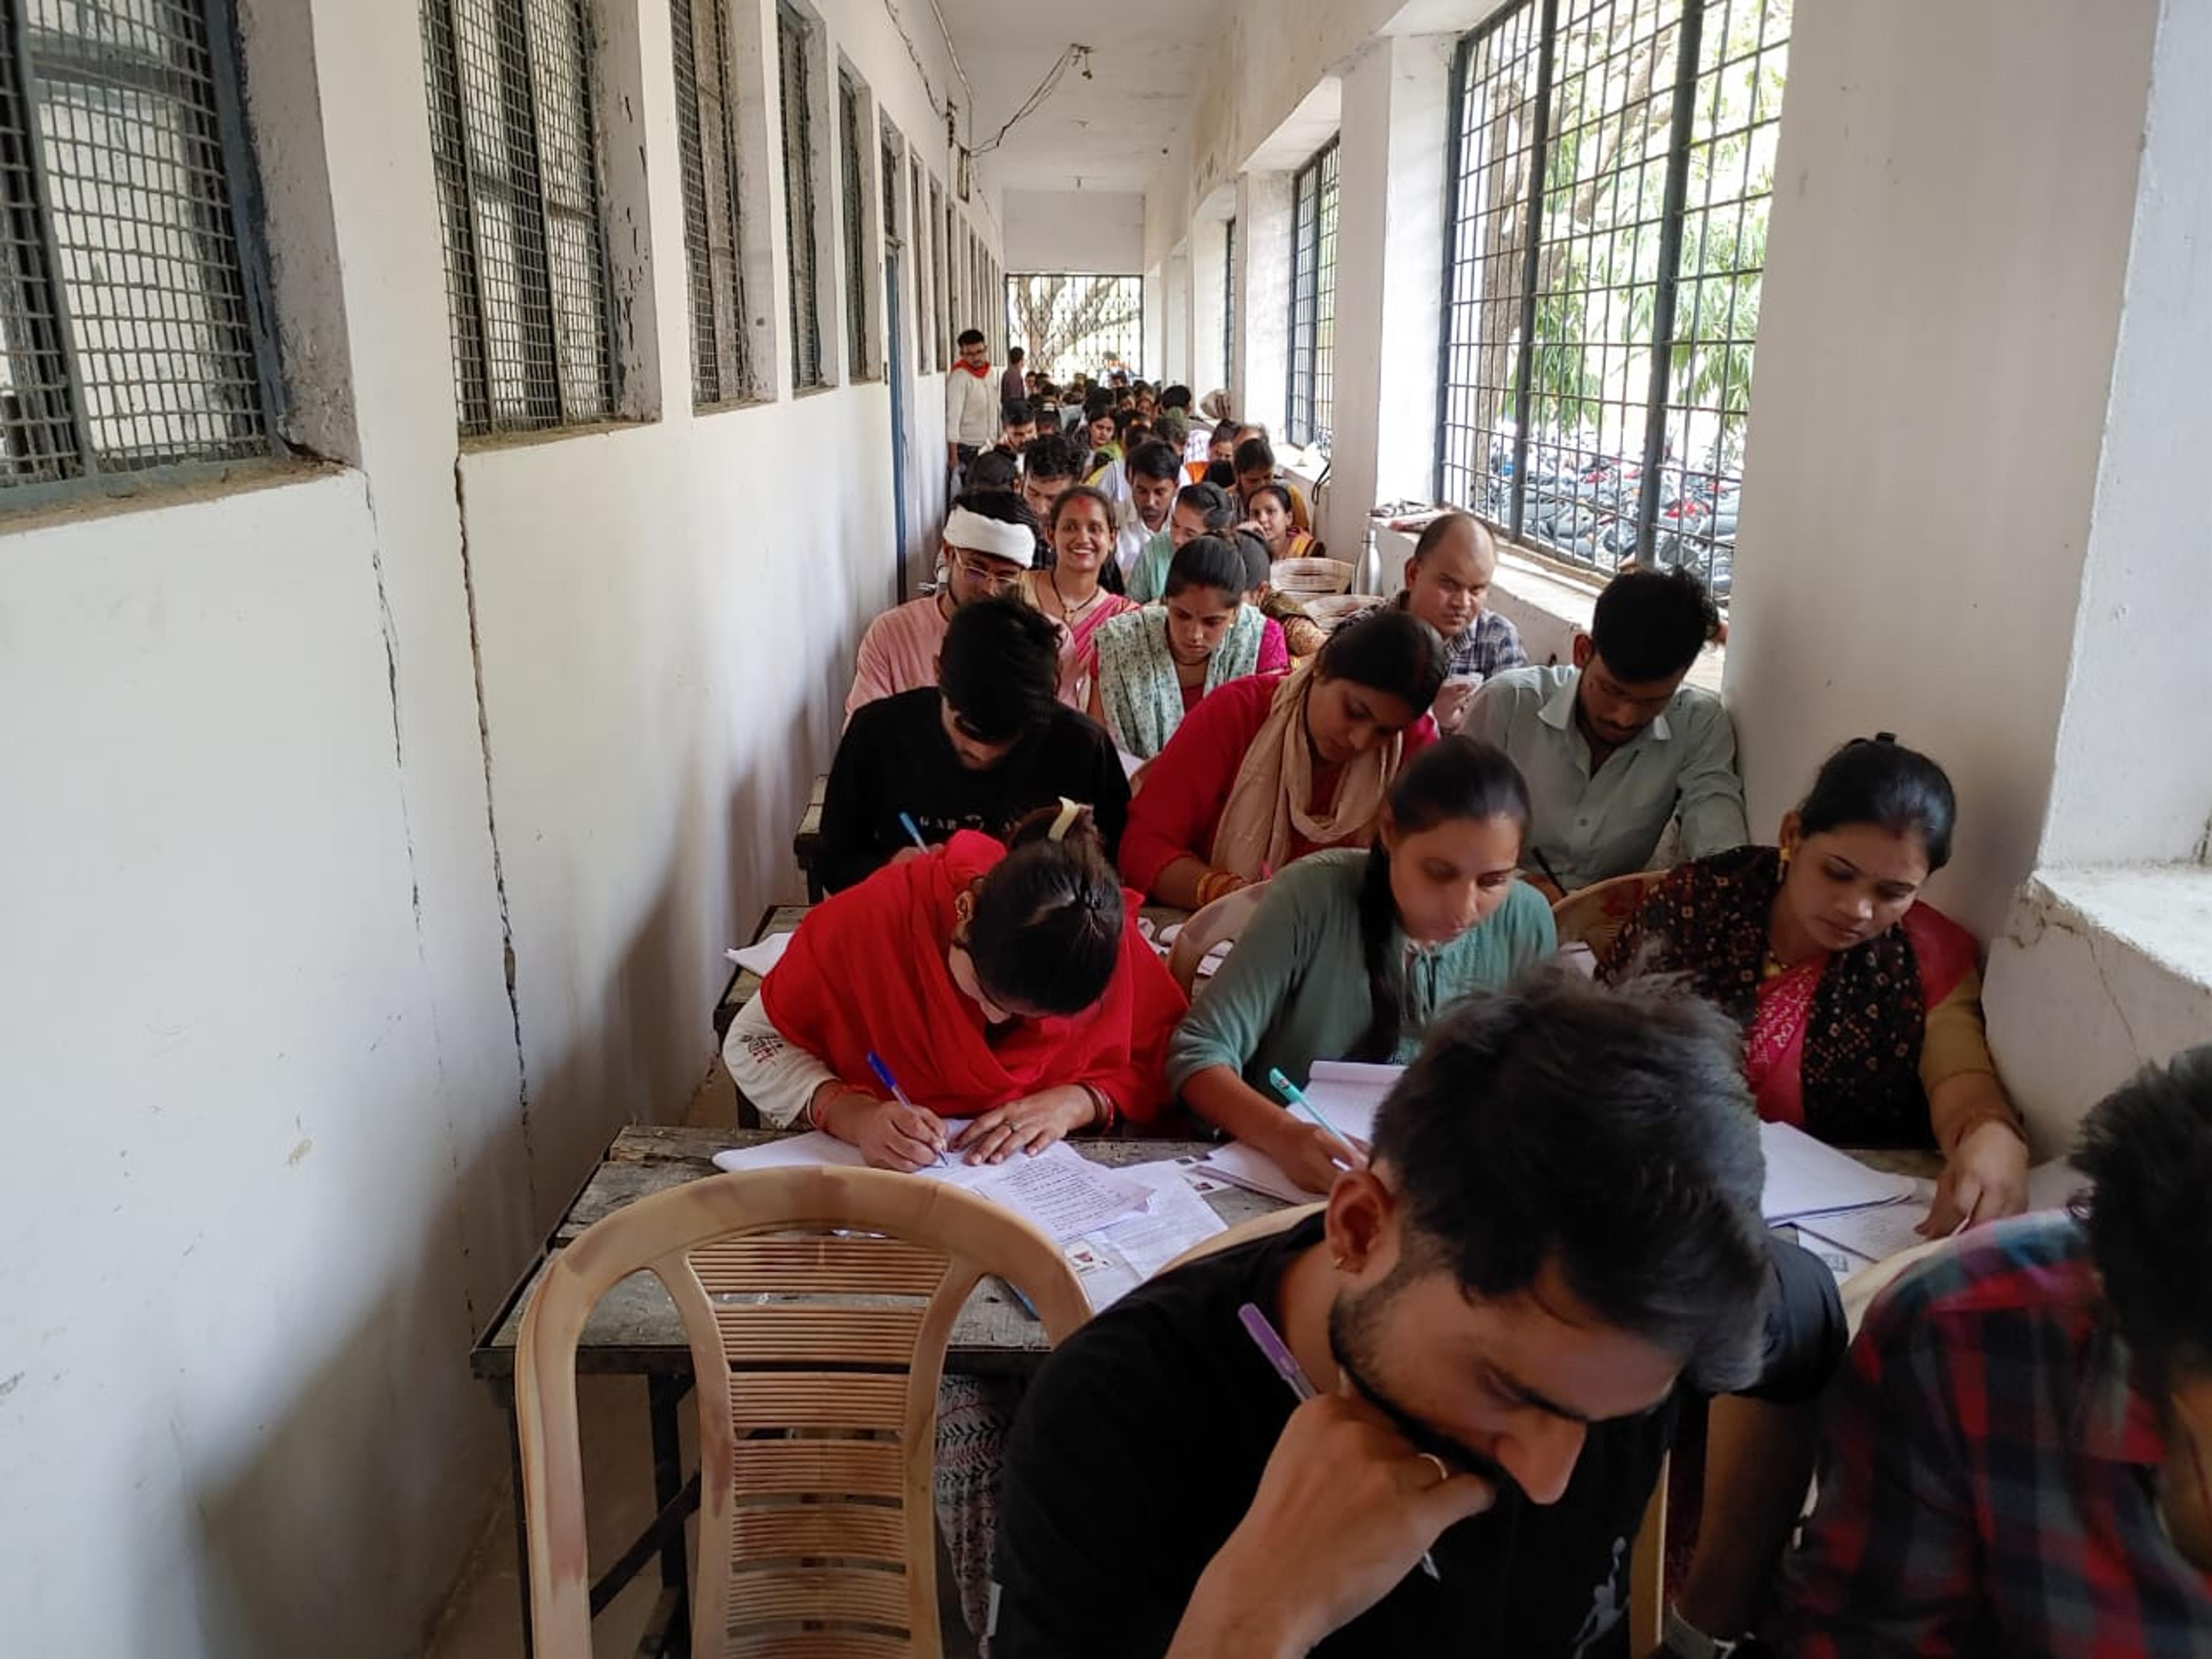 180 के बैठने की व्यवस्था, सात कॉलेज के 445 परीक्षार्थियों ने दी केन्द्र पर
परीक्षा